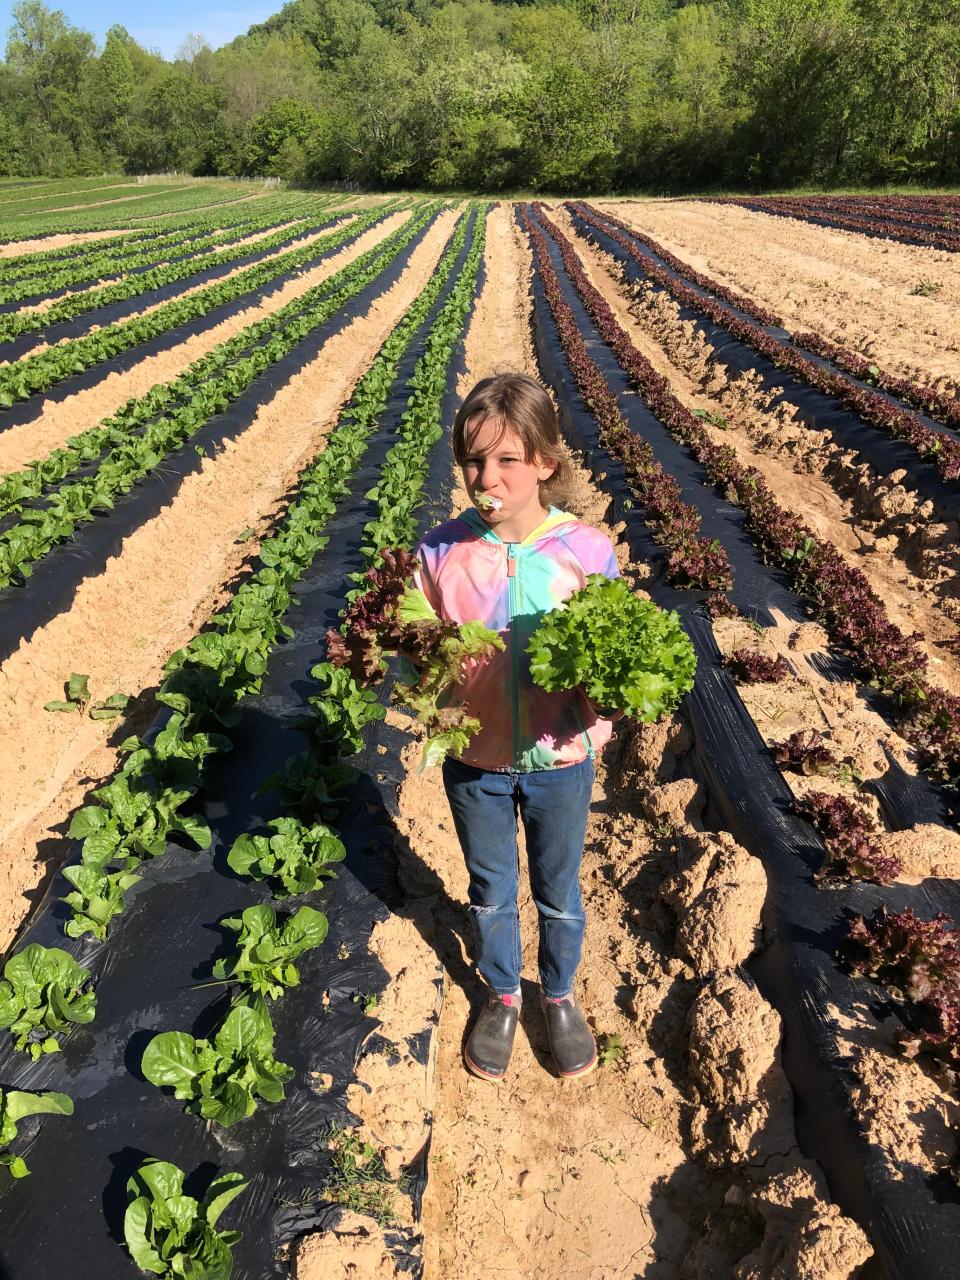 West Asheville farmer Steven Beltram's daughter taste-tests lettuce grown on land near Hominy Creek.